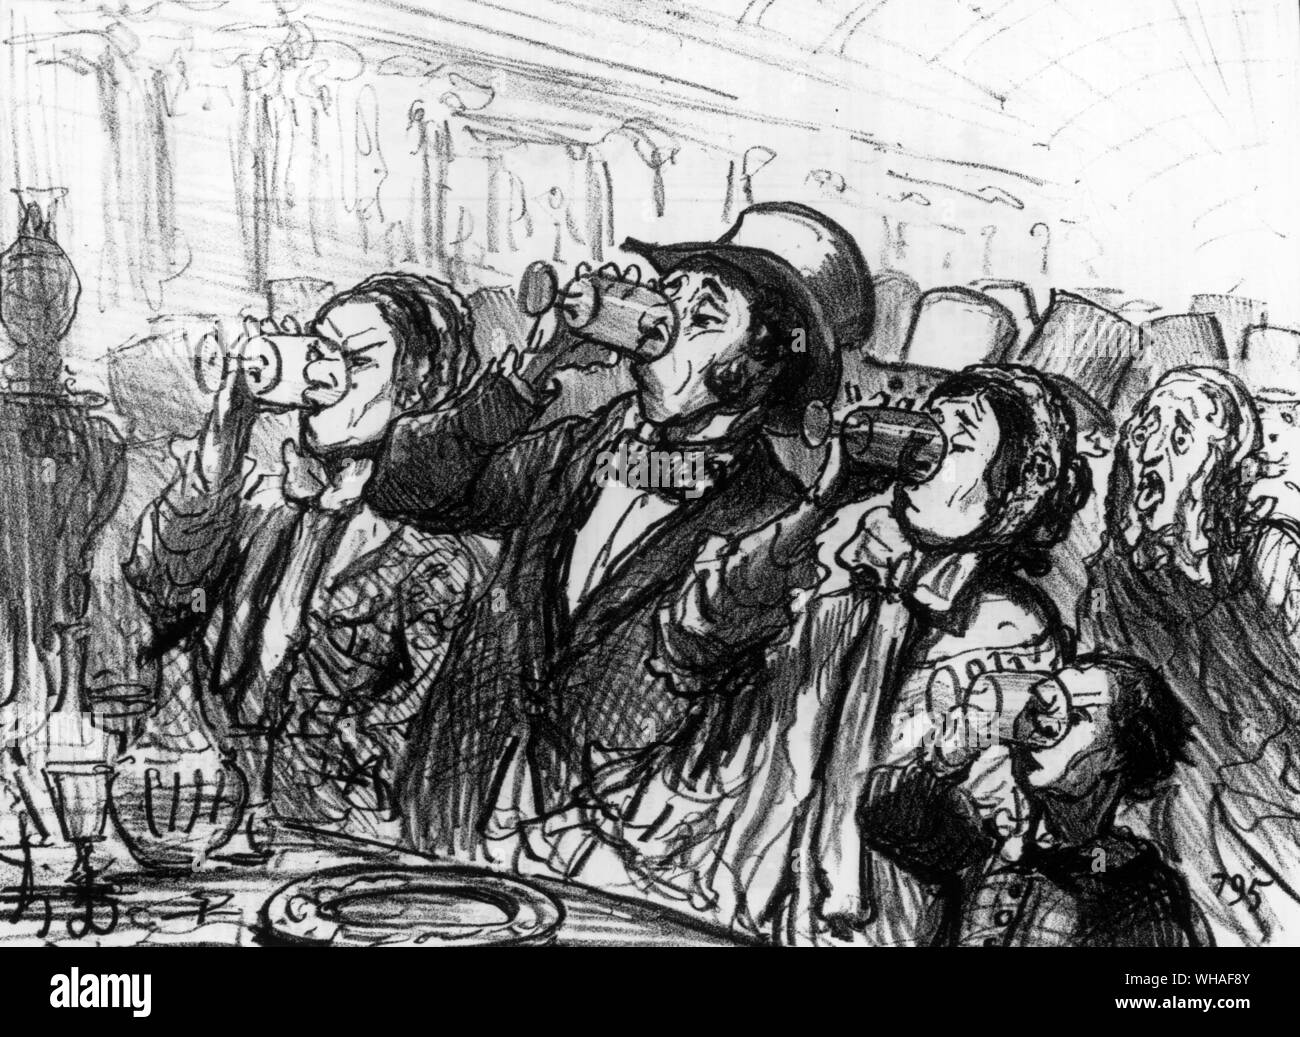 Dessin animé sur l'Exposition de Paris caricature d'Honoré Daumier. Le Charivari du 12 juillet 1855. Vue sur le buffet pendant la 'dog-jours' Banque D'Images